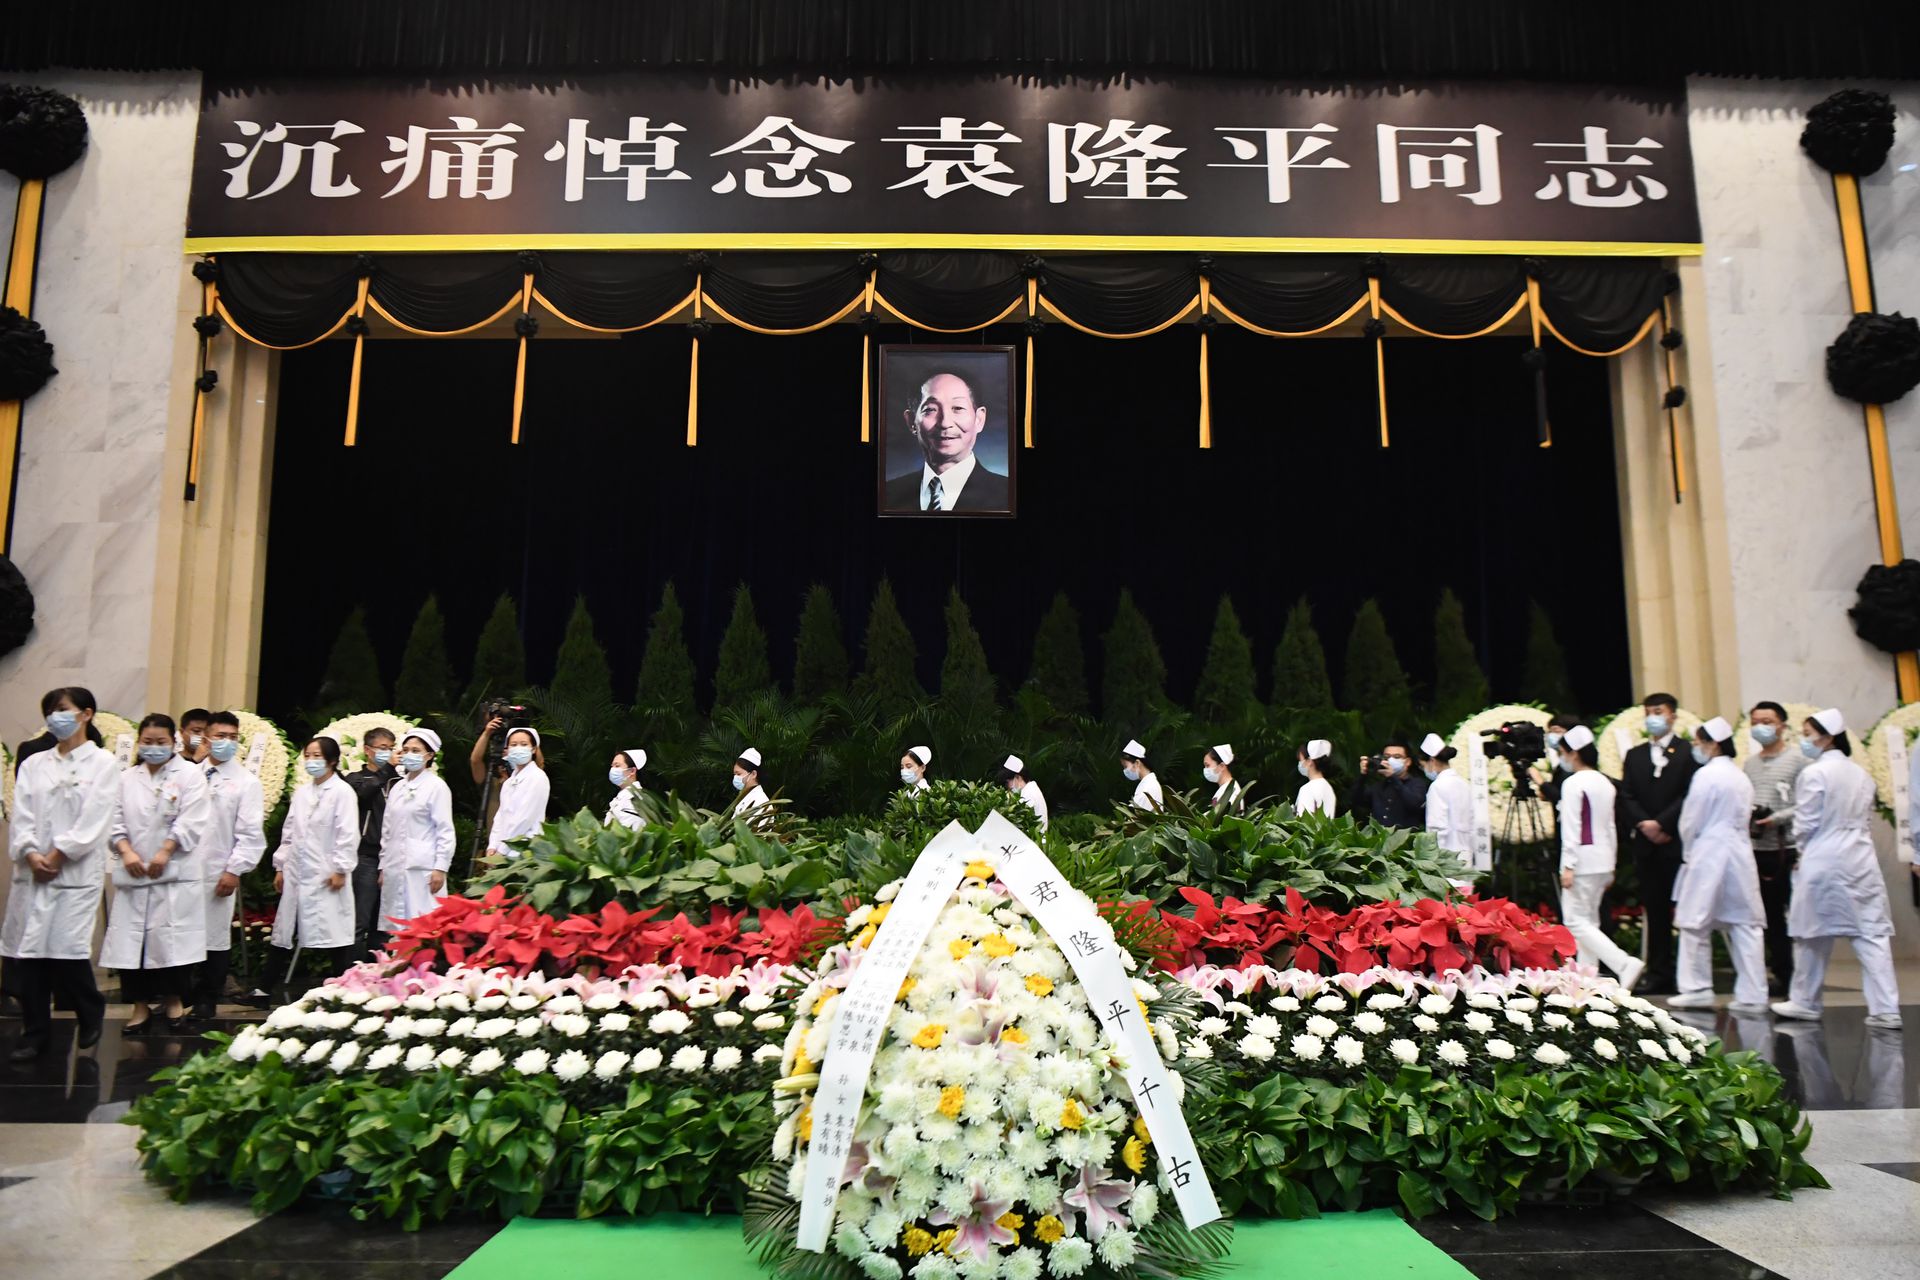 袁隆平是享誉海内外的著名农业科学家、中国杂交水稻事业的开创者和领导者、“共和国勋章”获得者、中国工程院院士，因病于2021年5月22日在长沙逝世，享年91岁。（ 新华社）